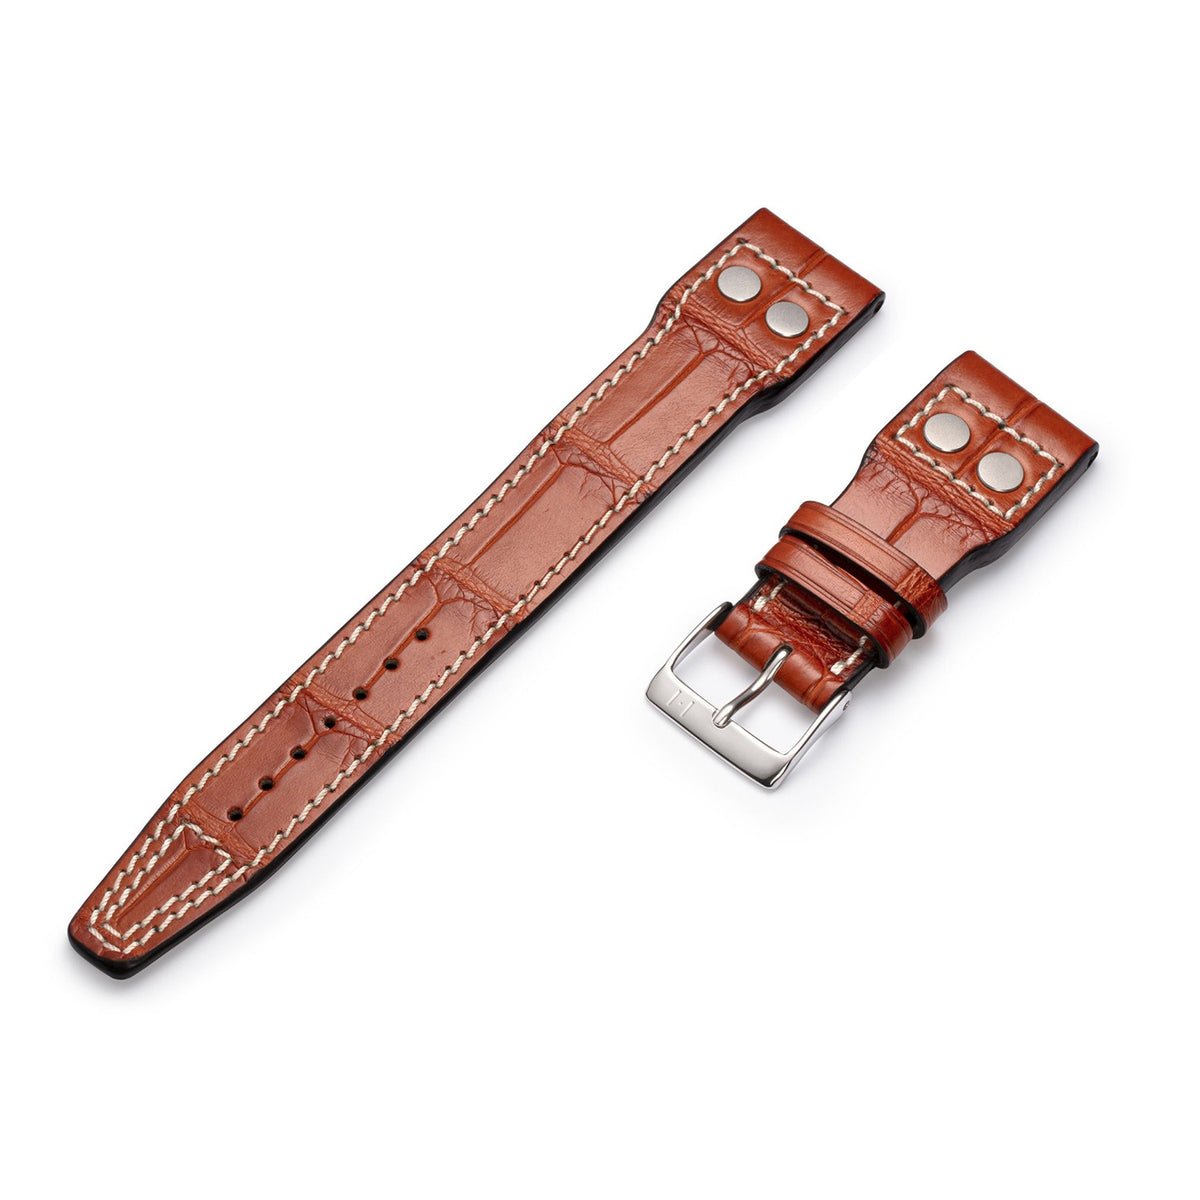 Alligator horlogeband voor groot pilotenhorloge - compatibele band voor IWC BIG PILOT (band niet van IWC) - zilverkleurige gesp